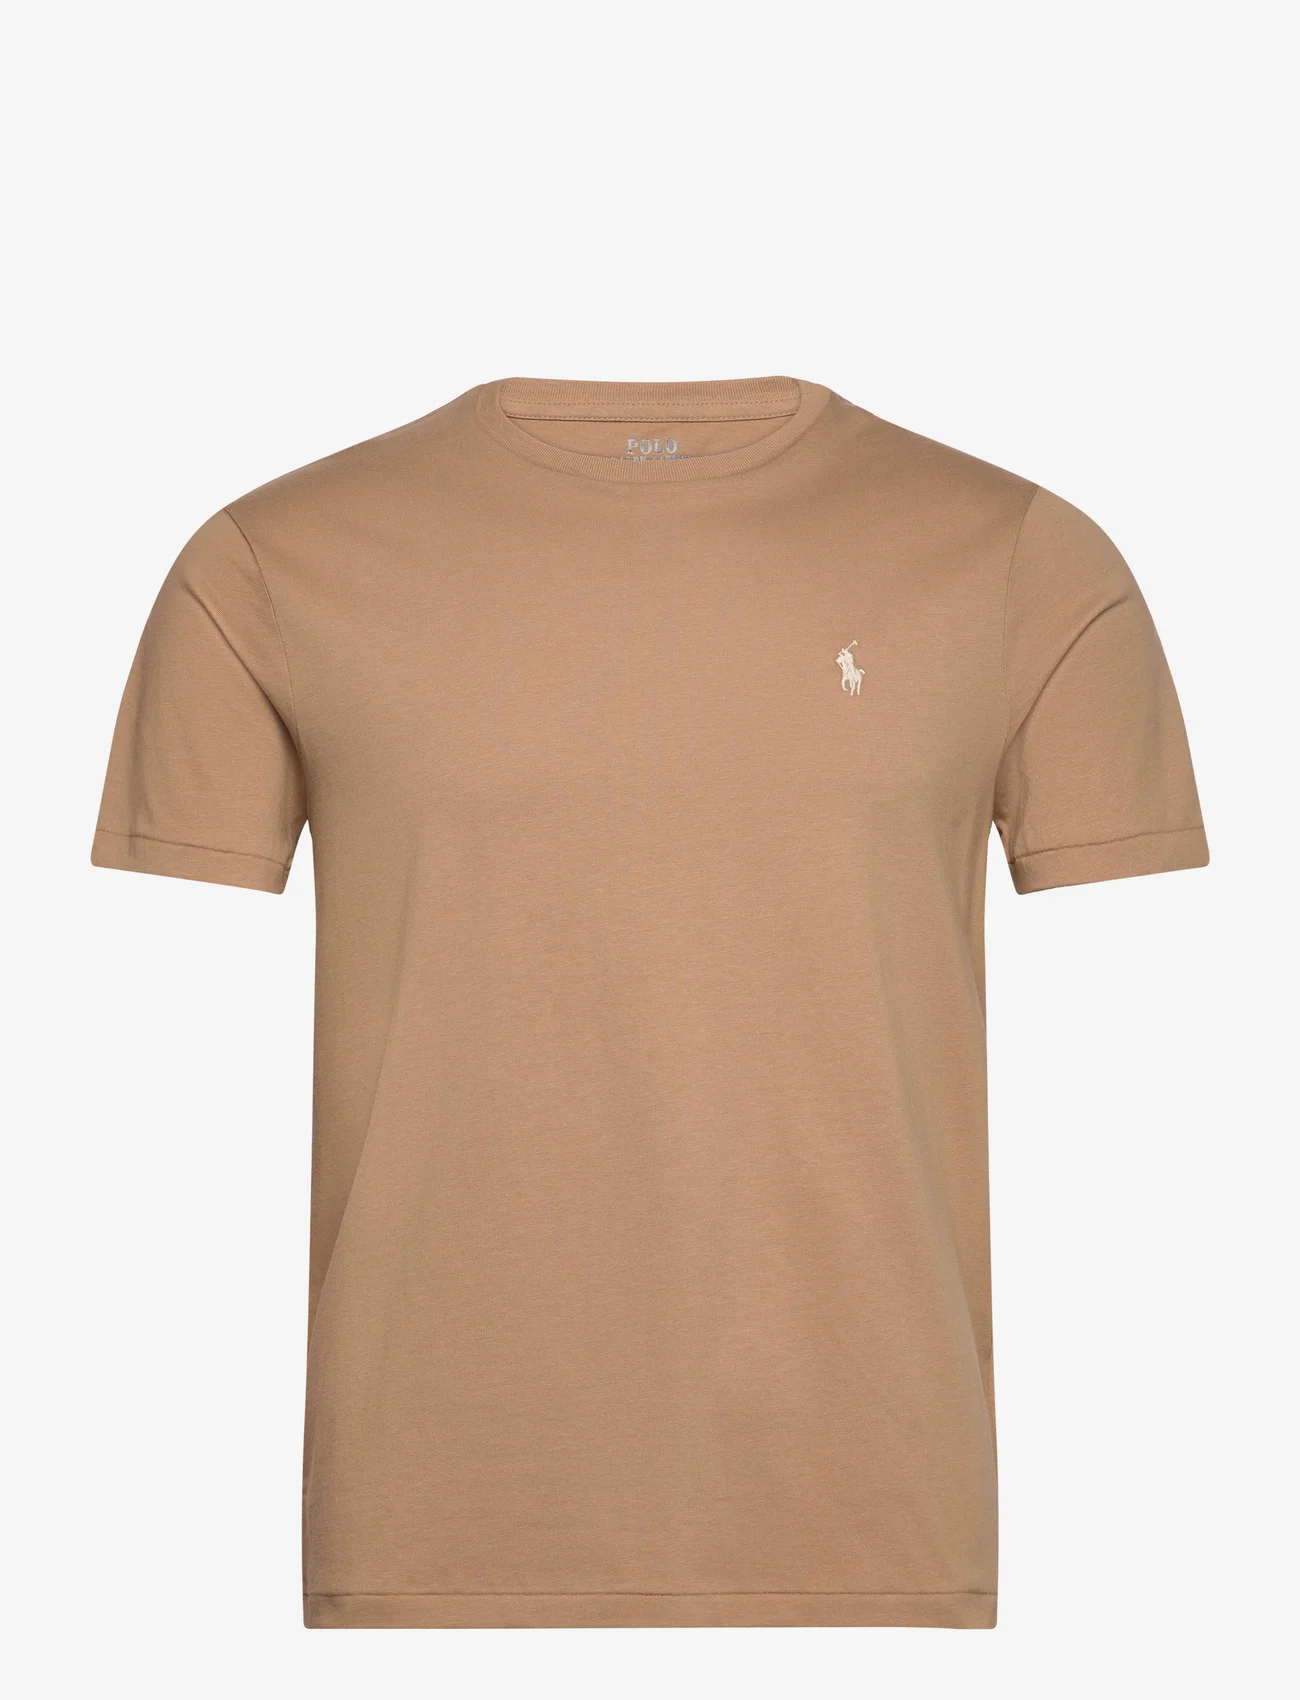 Polo Ralph Lauren - Custom Slim Fit Jersey Crewneck T-Shirt - laisvalaikio marškinėliai - cafe tan/c8176 - 0